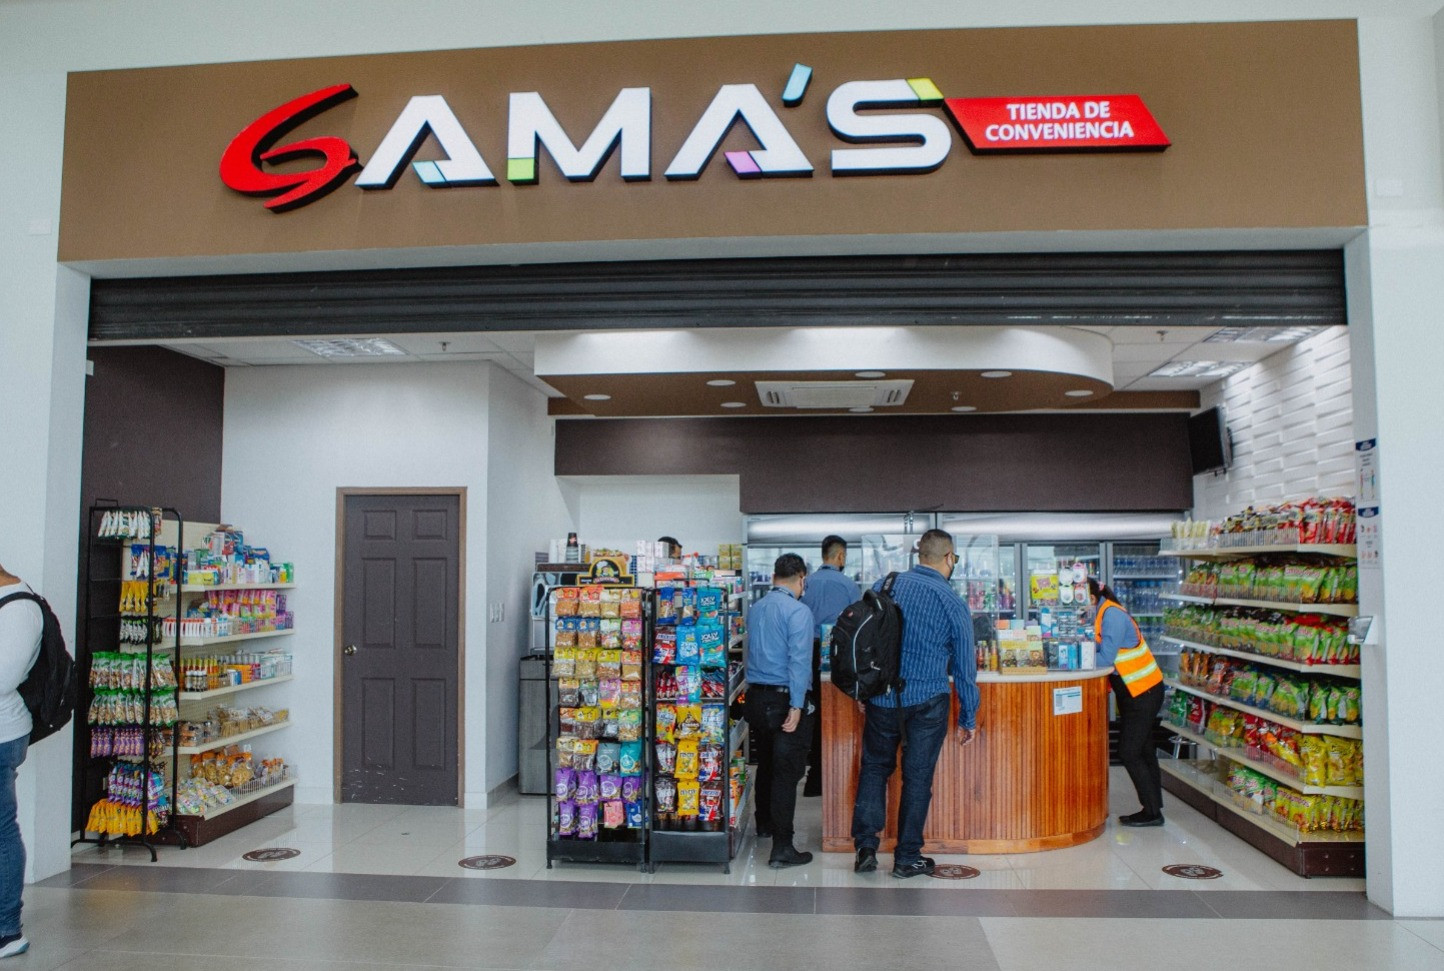 Servicios-Aeropuerto-Comayagua-Honduras-Palmerola-Tienda Gama’s ofrece desde bebidas, golosinas hasta medicinas